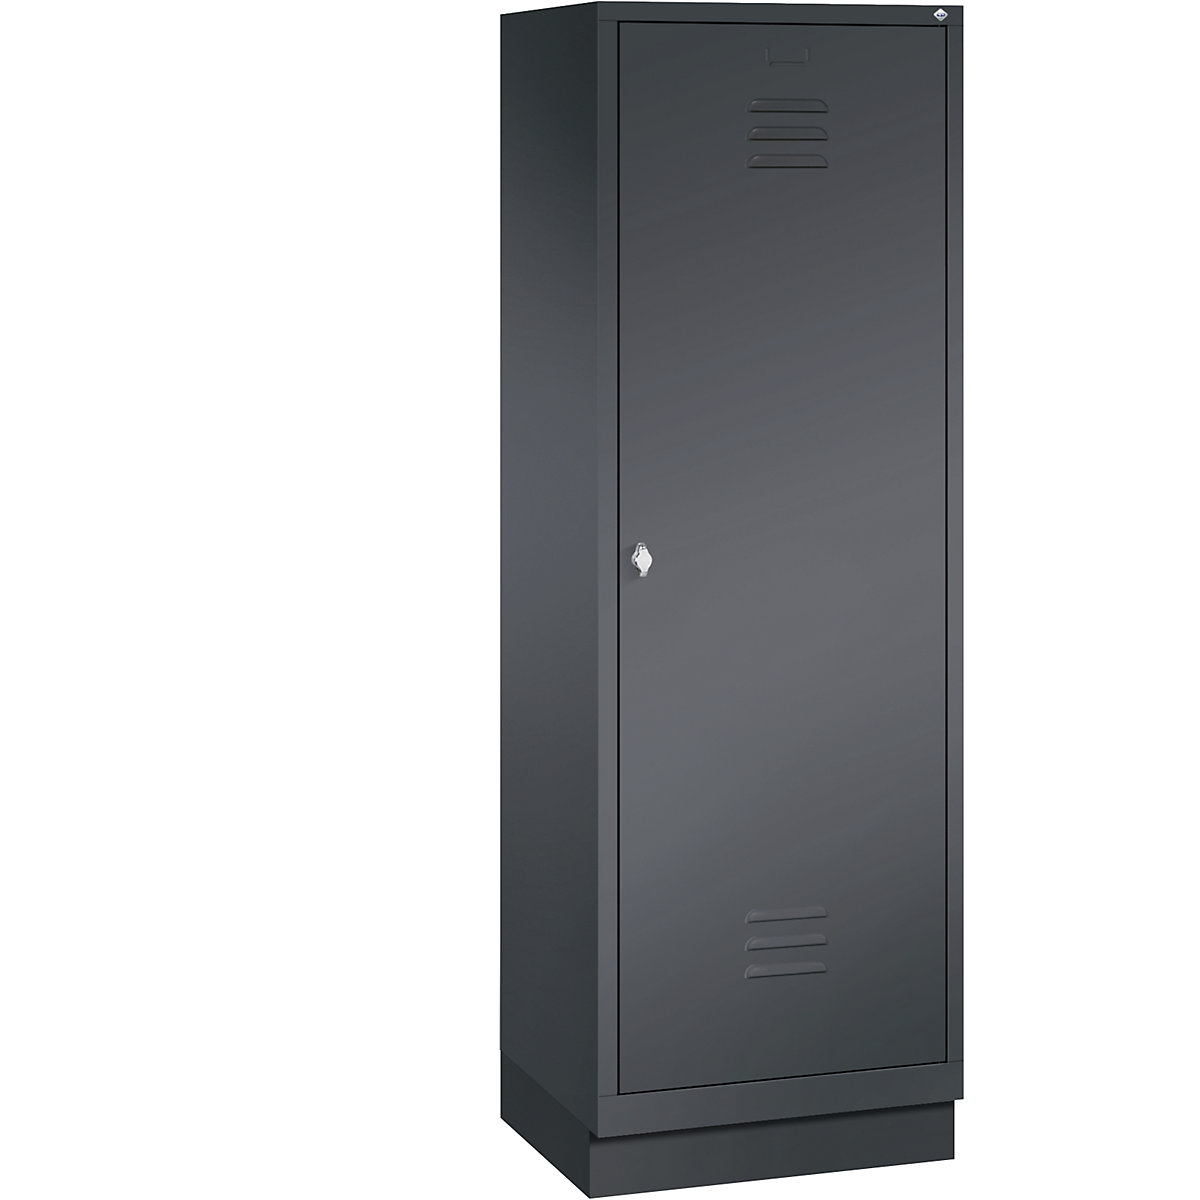 Šatní skříň se soklem CLASSIC s dveřmi přes 2 oddíly – C+P, 2 oddíly, šířka oddílu 300 mm, černošedá